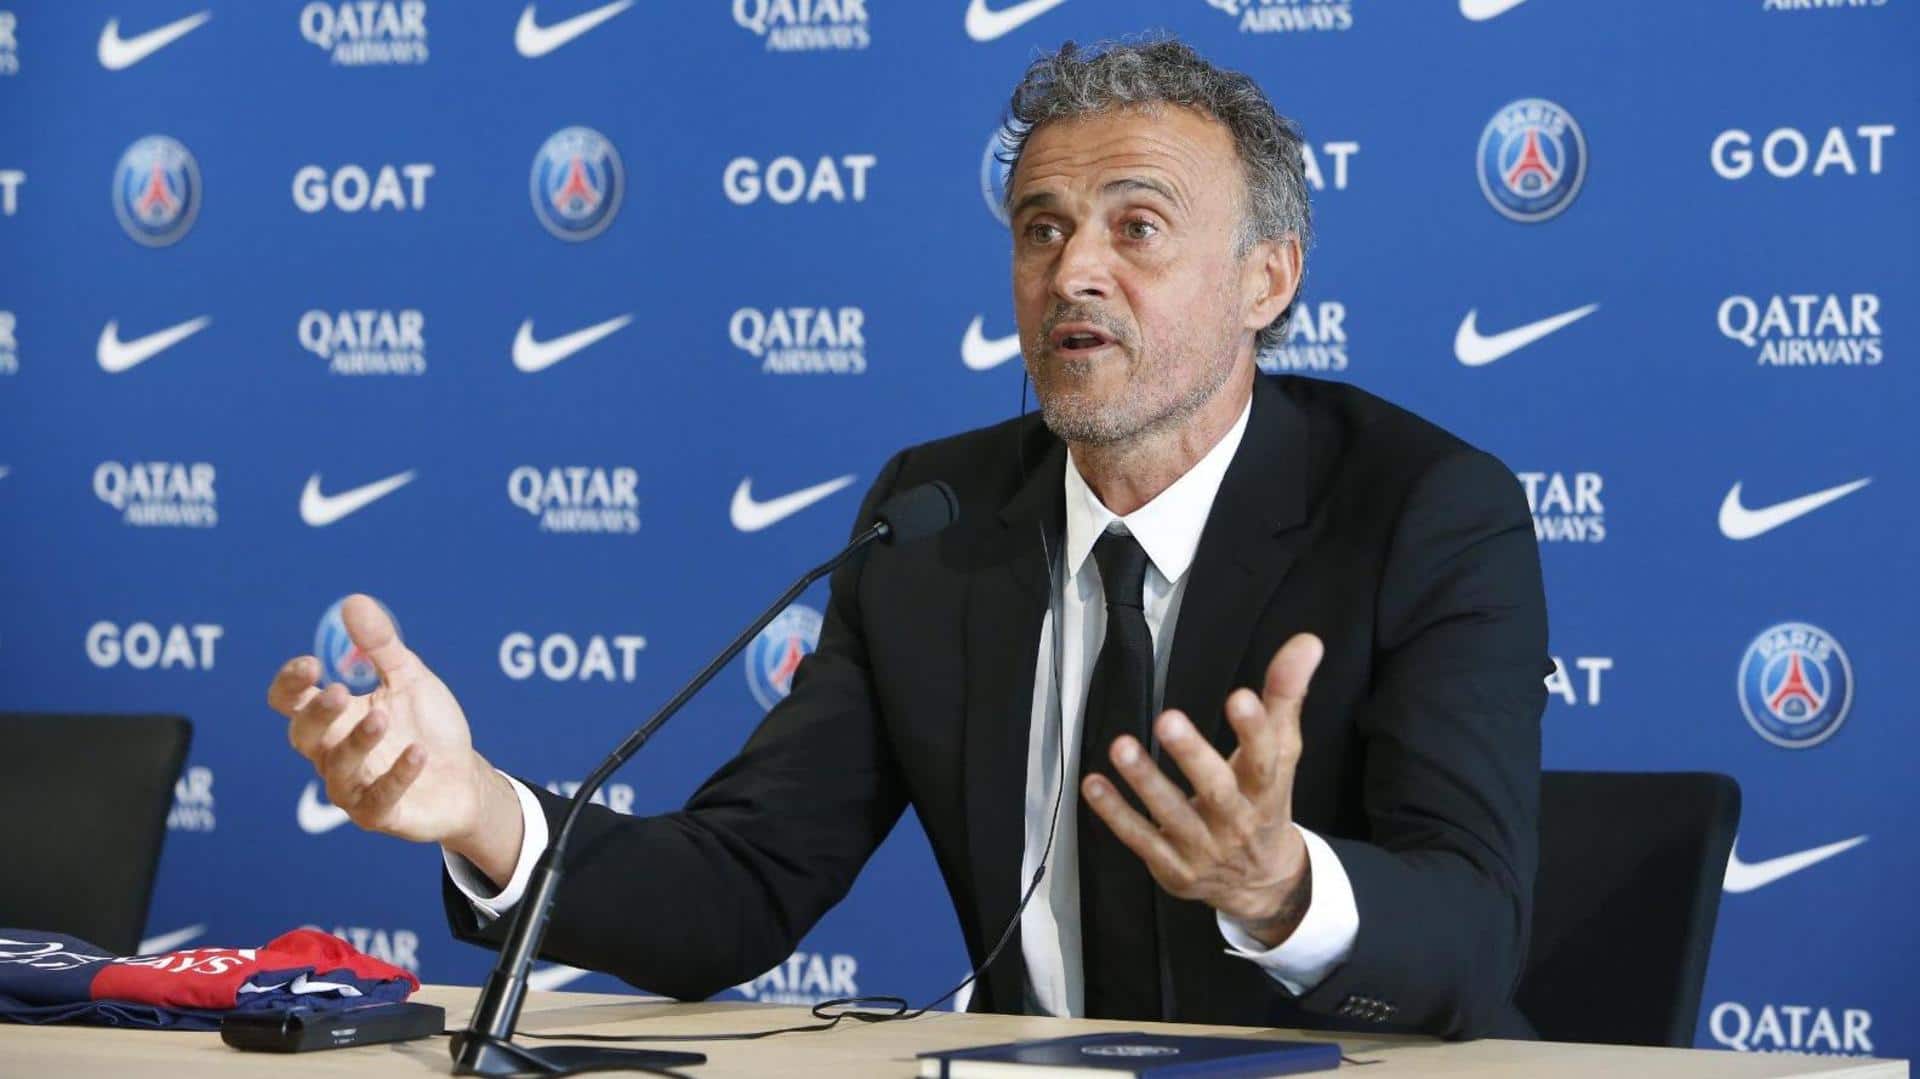 Paris Saint-Germain appoint Luis Enrique as manager: Decoding his stats